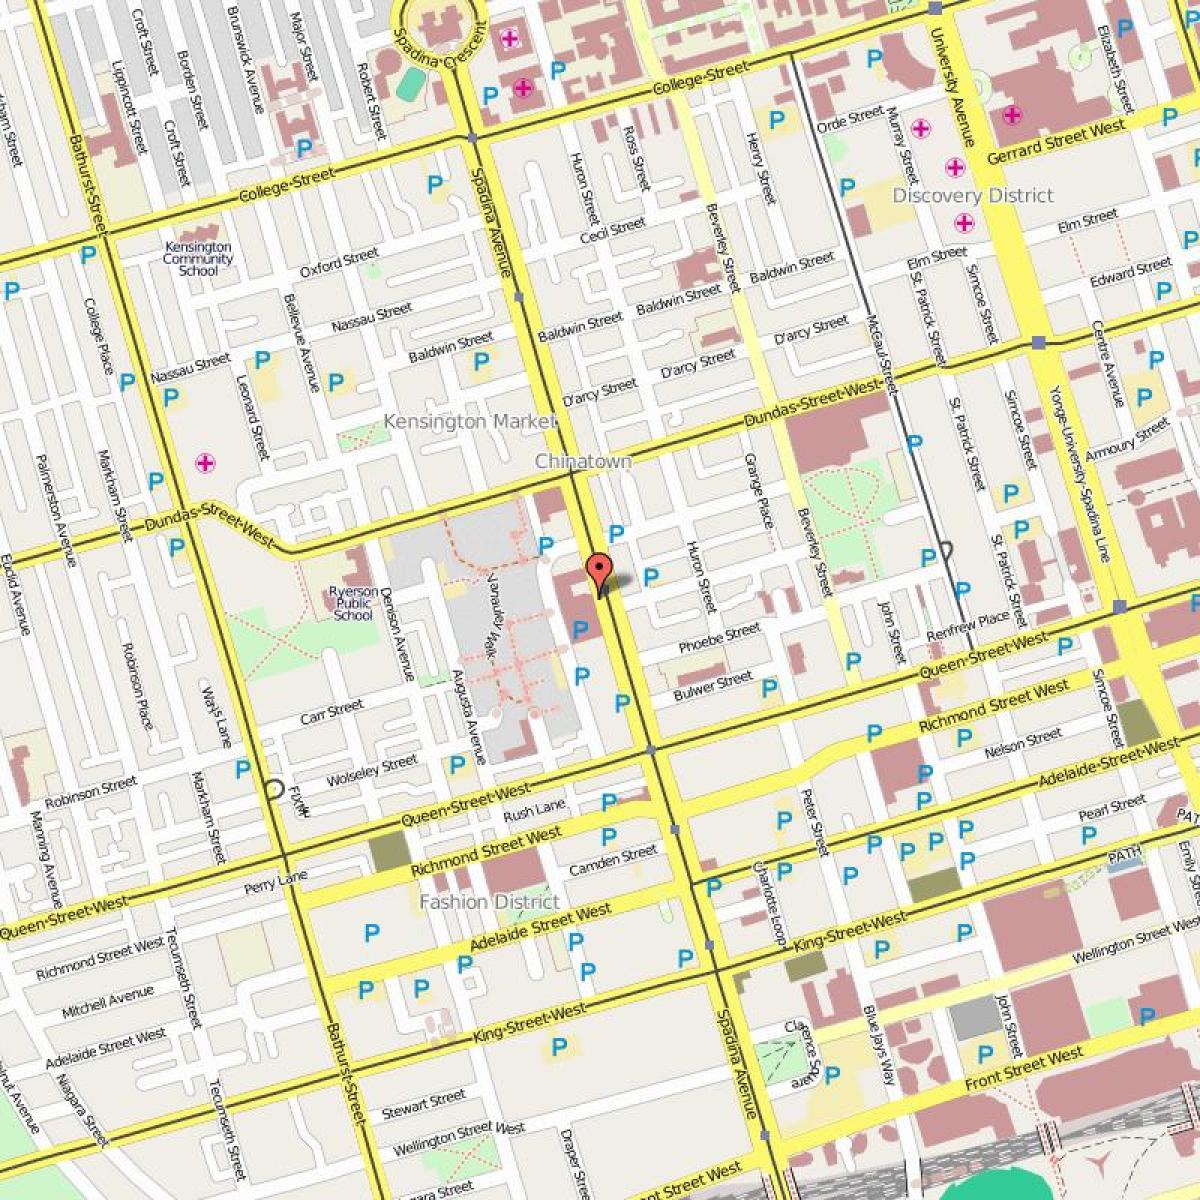 Mapa ng Chinatown Toronto